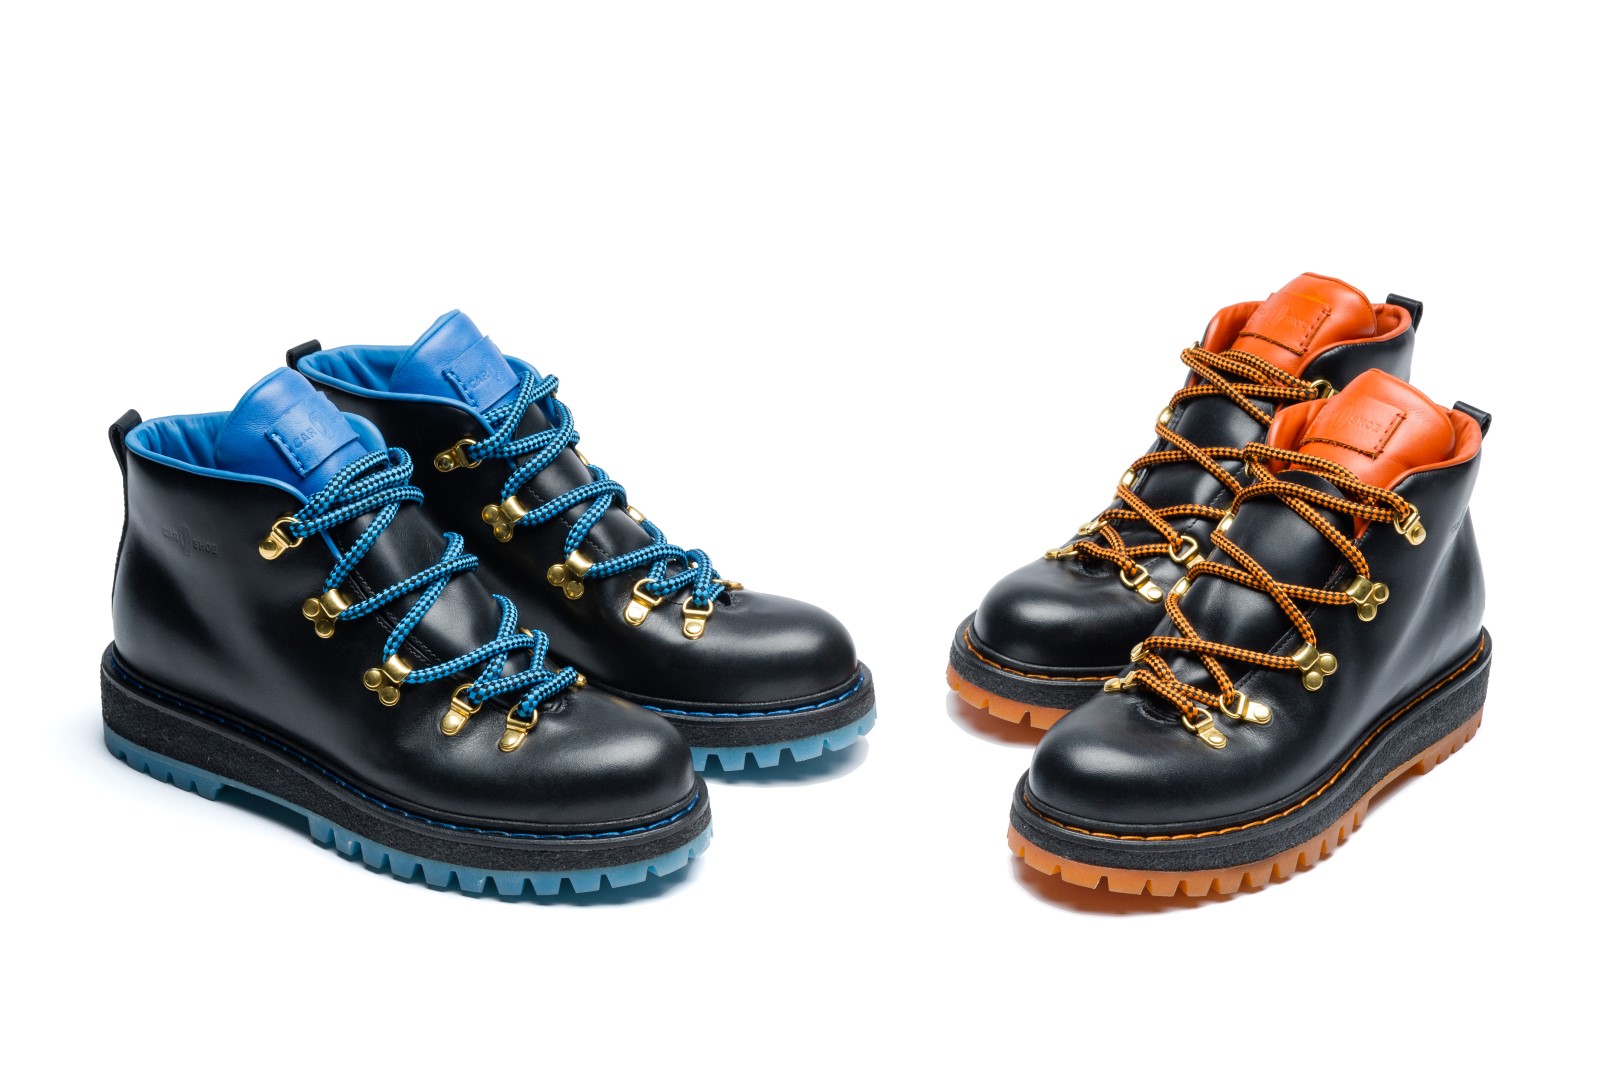 Car Shoe scarpe autunno inverno 2015 2016: la nuova Collezione Montagna, le foto